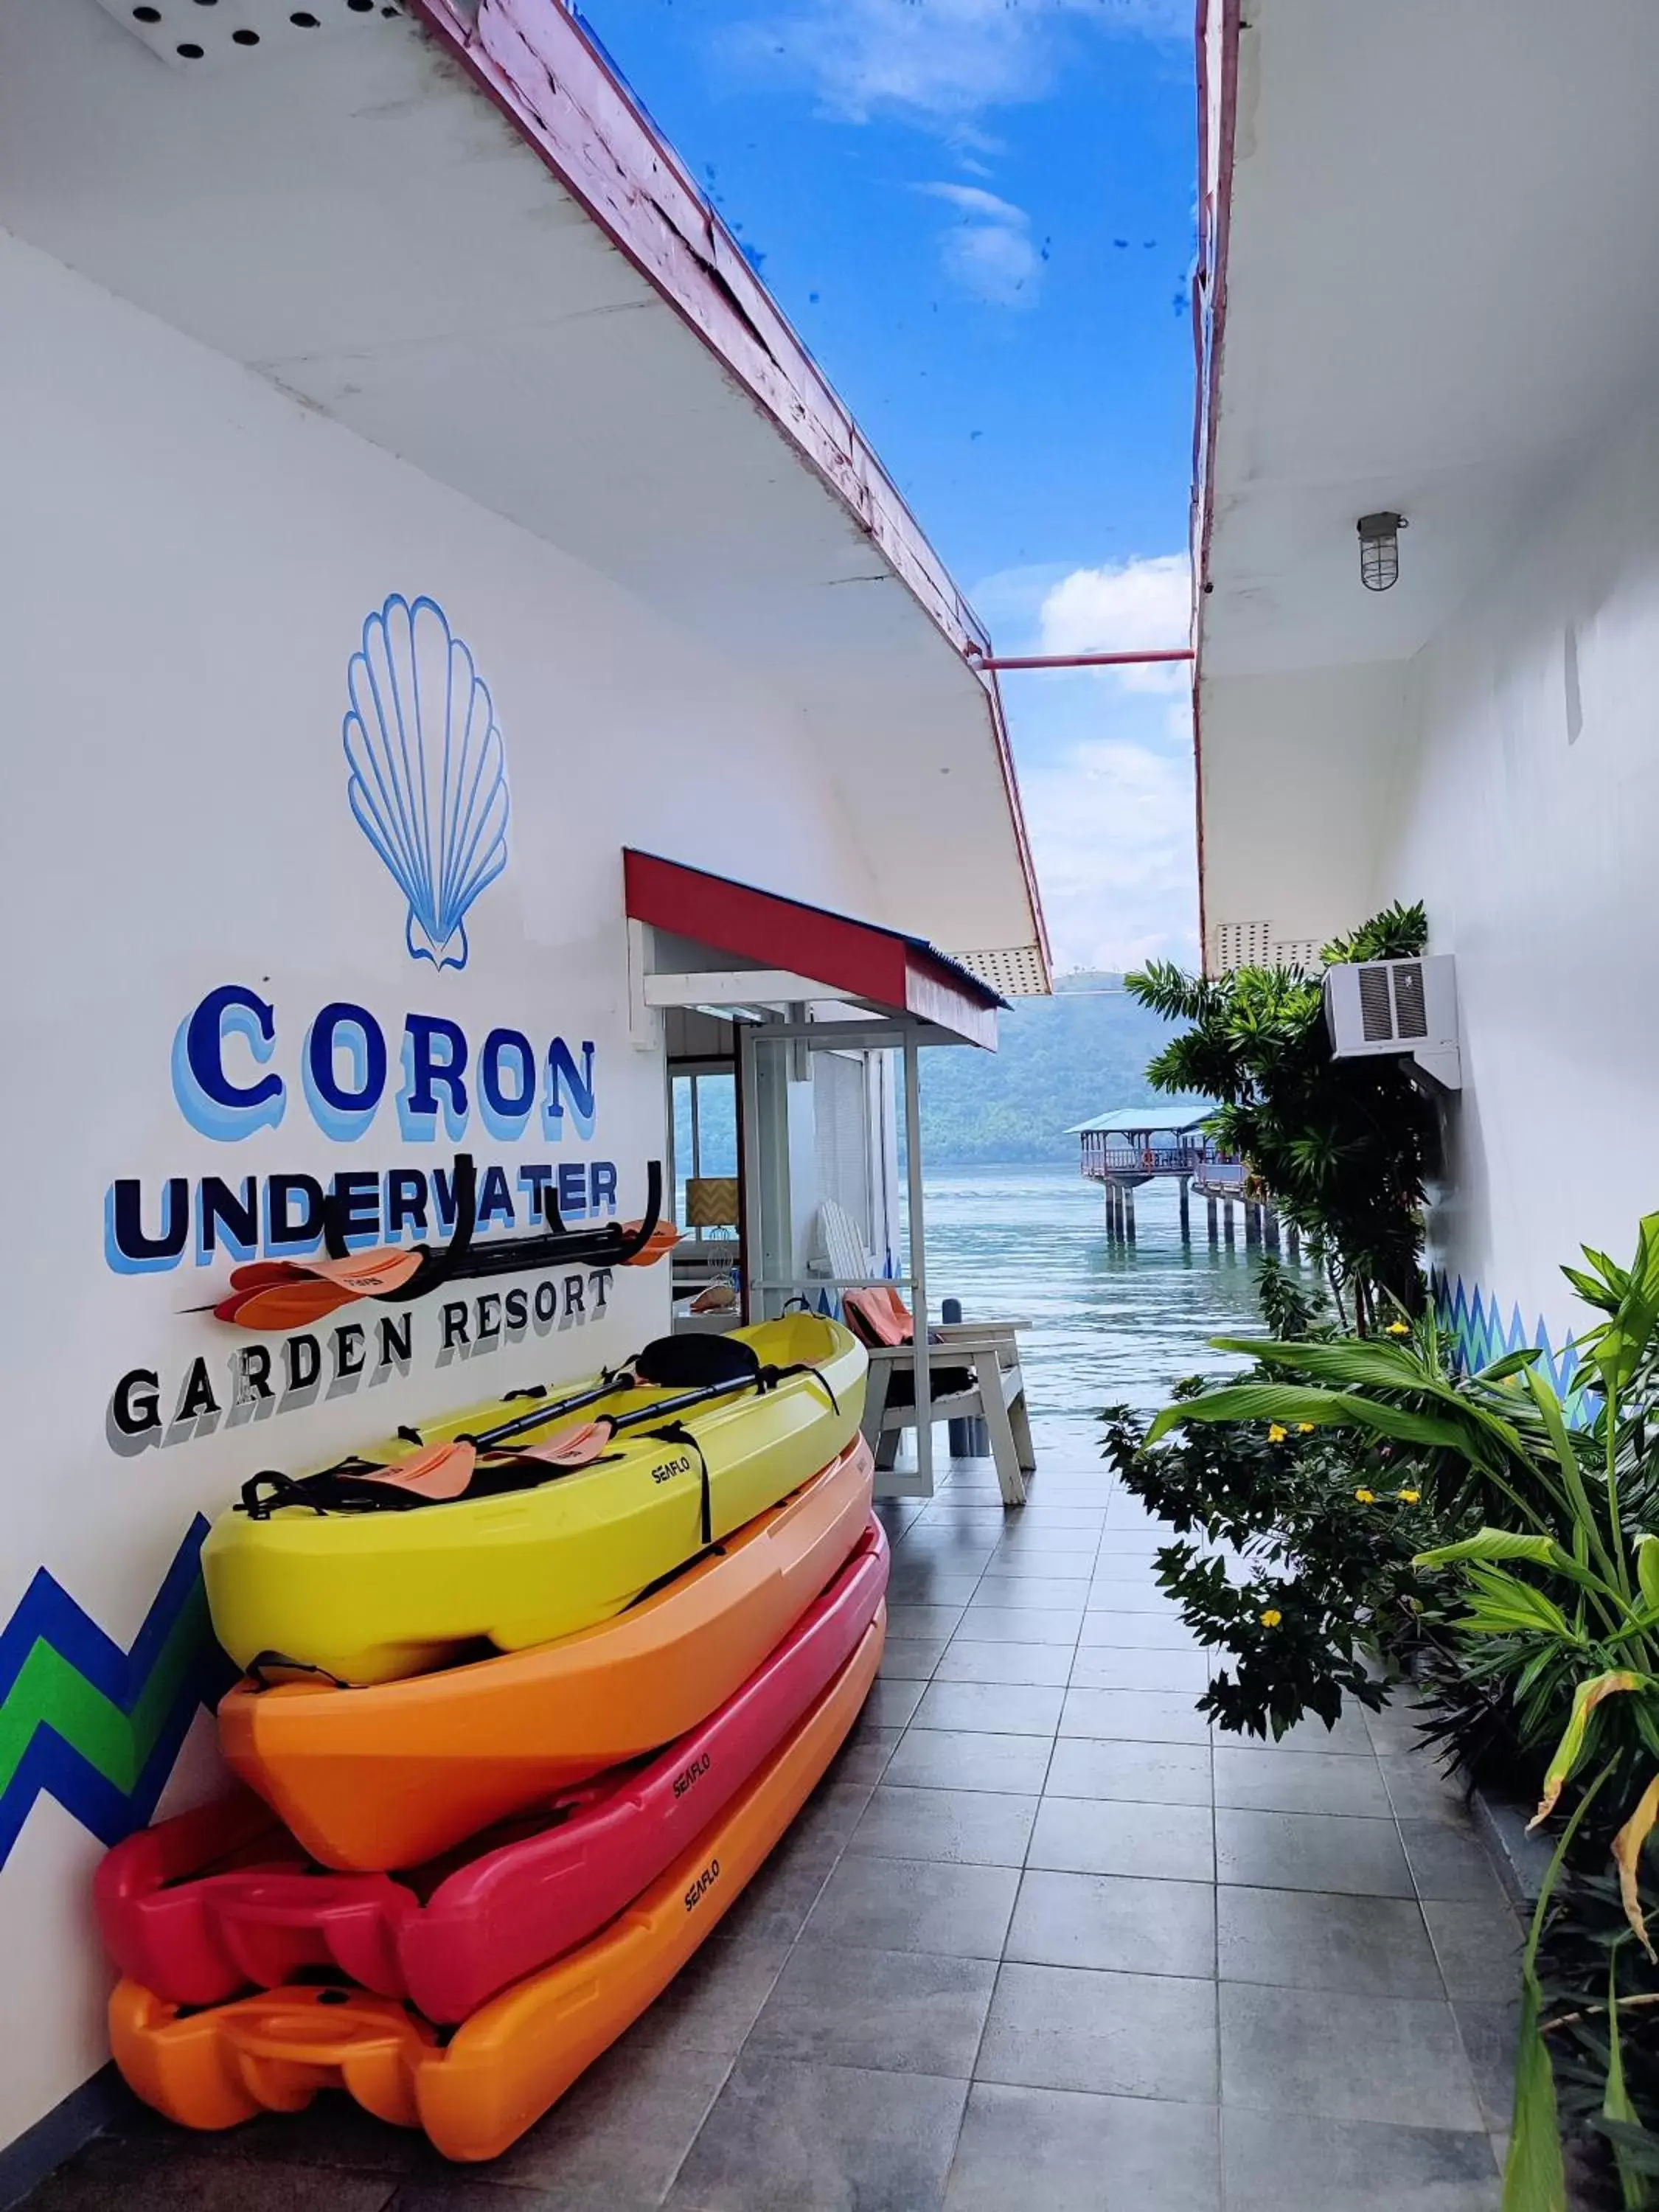 Aqua park in Coron Underwater Garden Resort